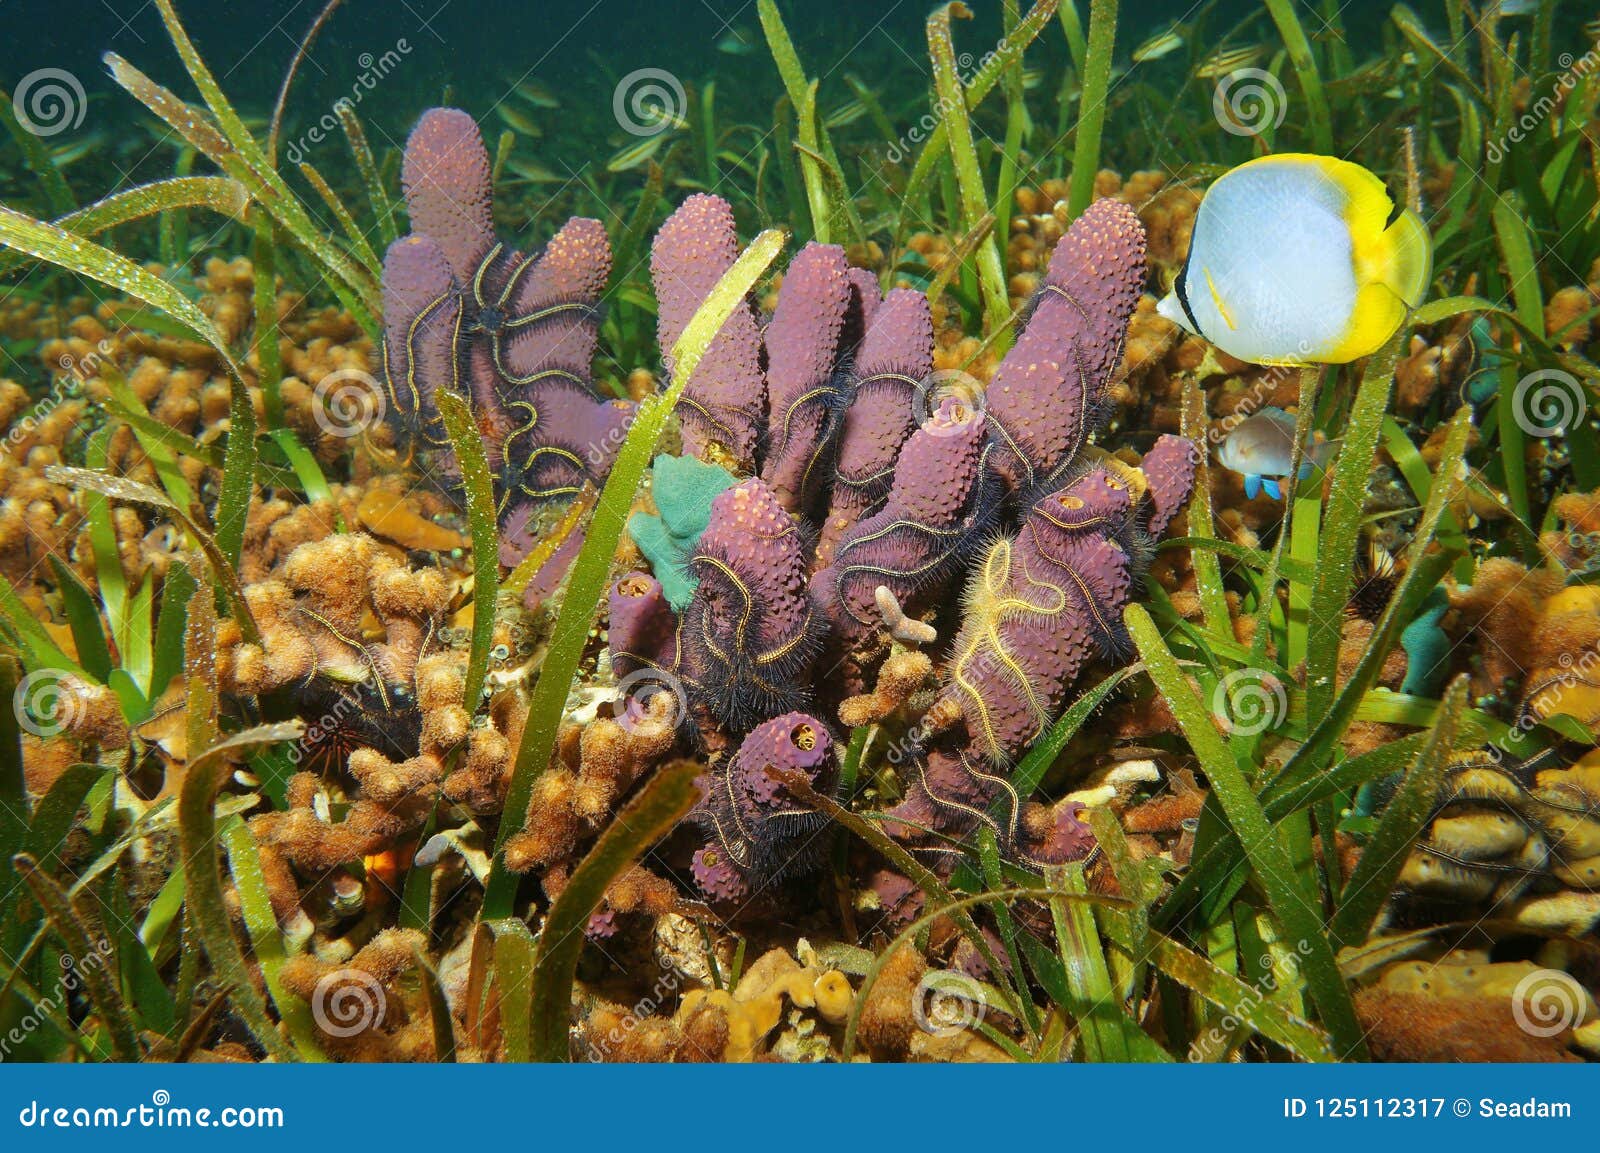 Υποβρύχια ζωή σε μια ρηχή καραϊβική θάλασσα βυθού. Υποβρύχια ζωή σε έναν ρηχό βυθό στην καραϊβική θάλασσα, το διακλαδιμένος σφουγγάρι σωλήνων με τα εύθραυστα αστέρια, το κοράλλι και ένα τροπικό ψάρι spotfin butterflyfish, Παναμάς, Κεντρική Αμερική